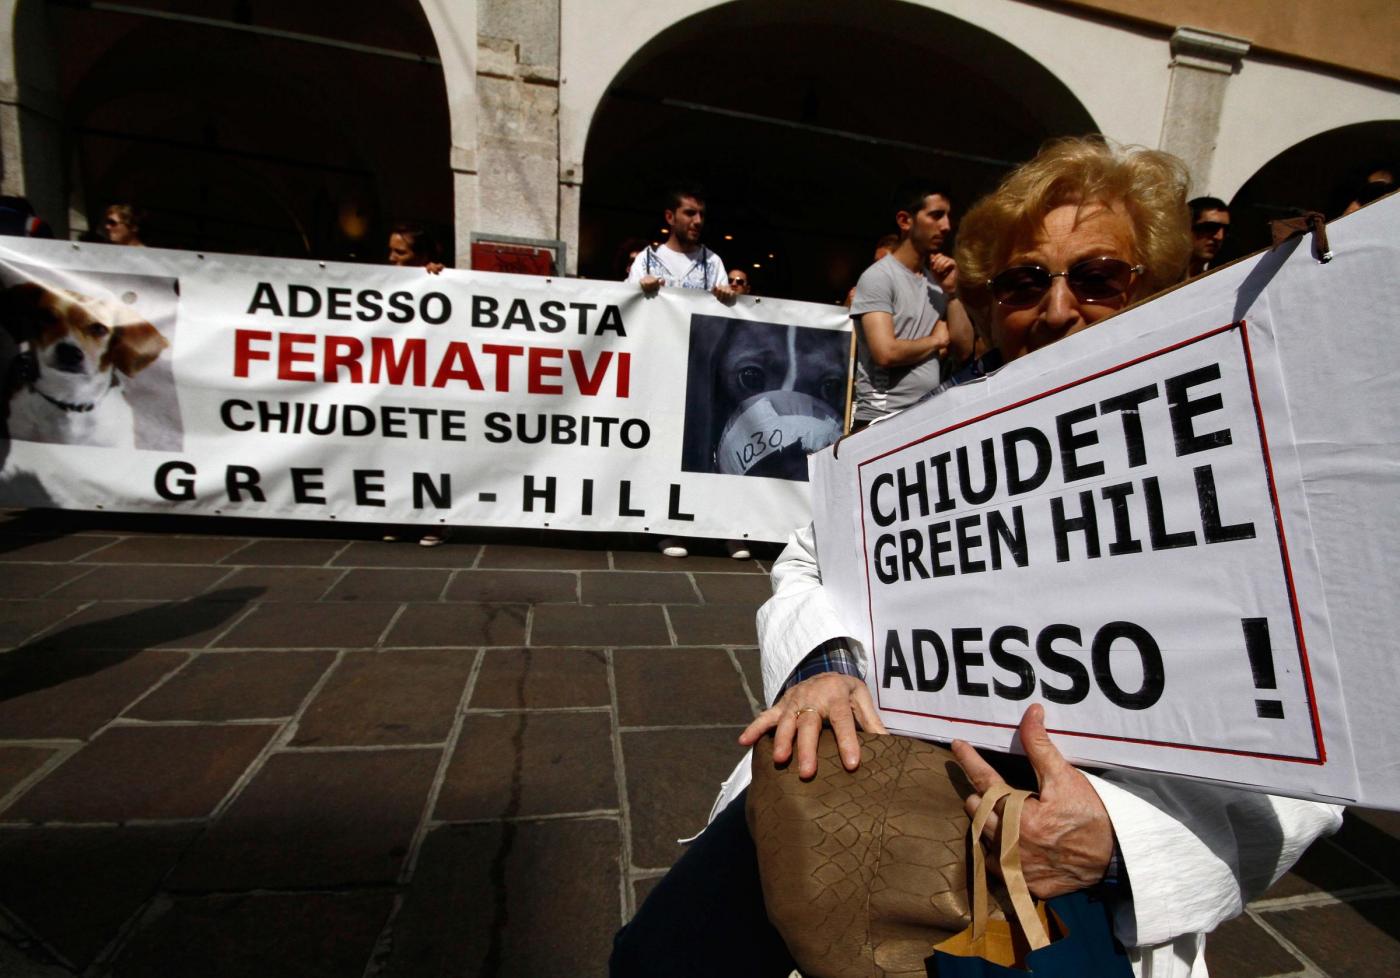 Brescia, la battaglia degli animalisti contro 'Green Hill' 09